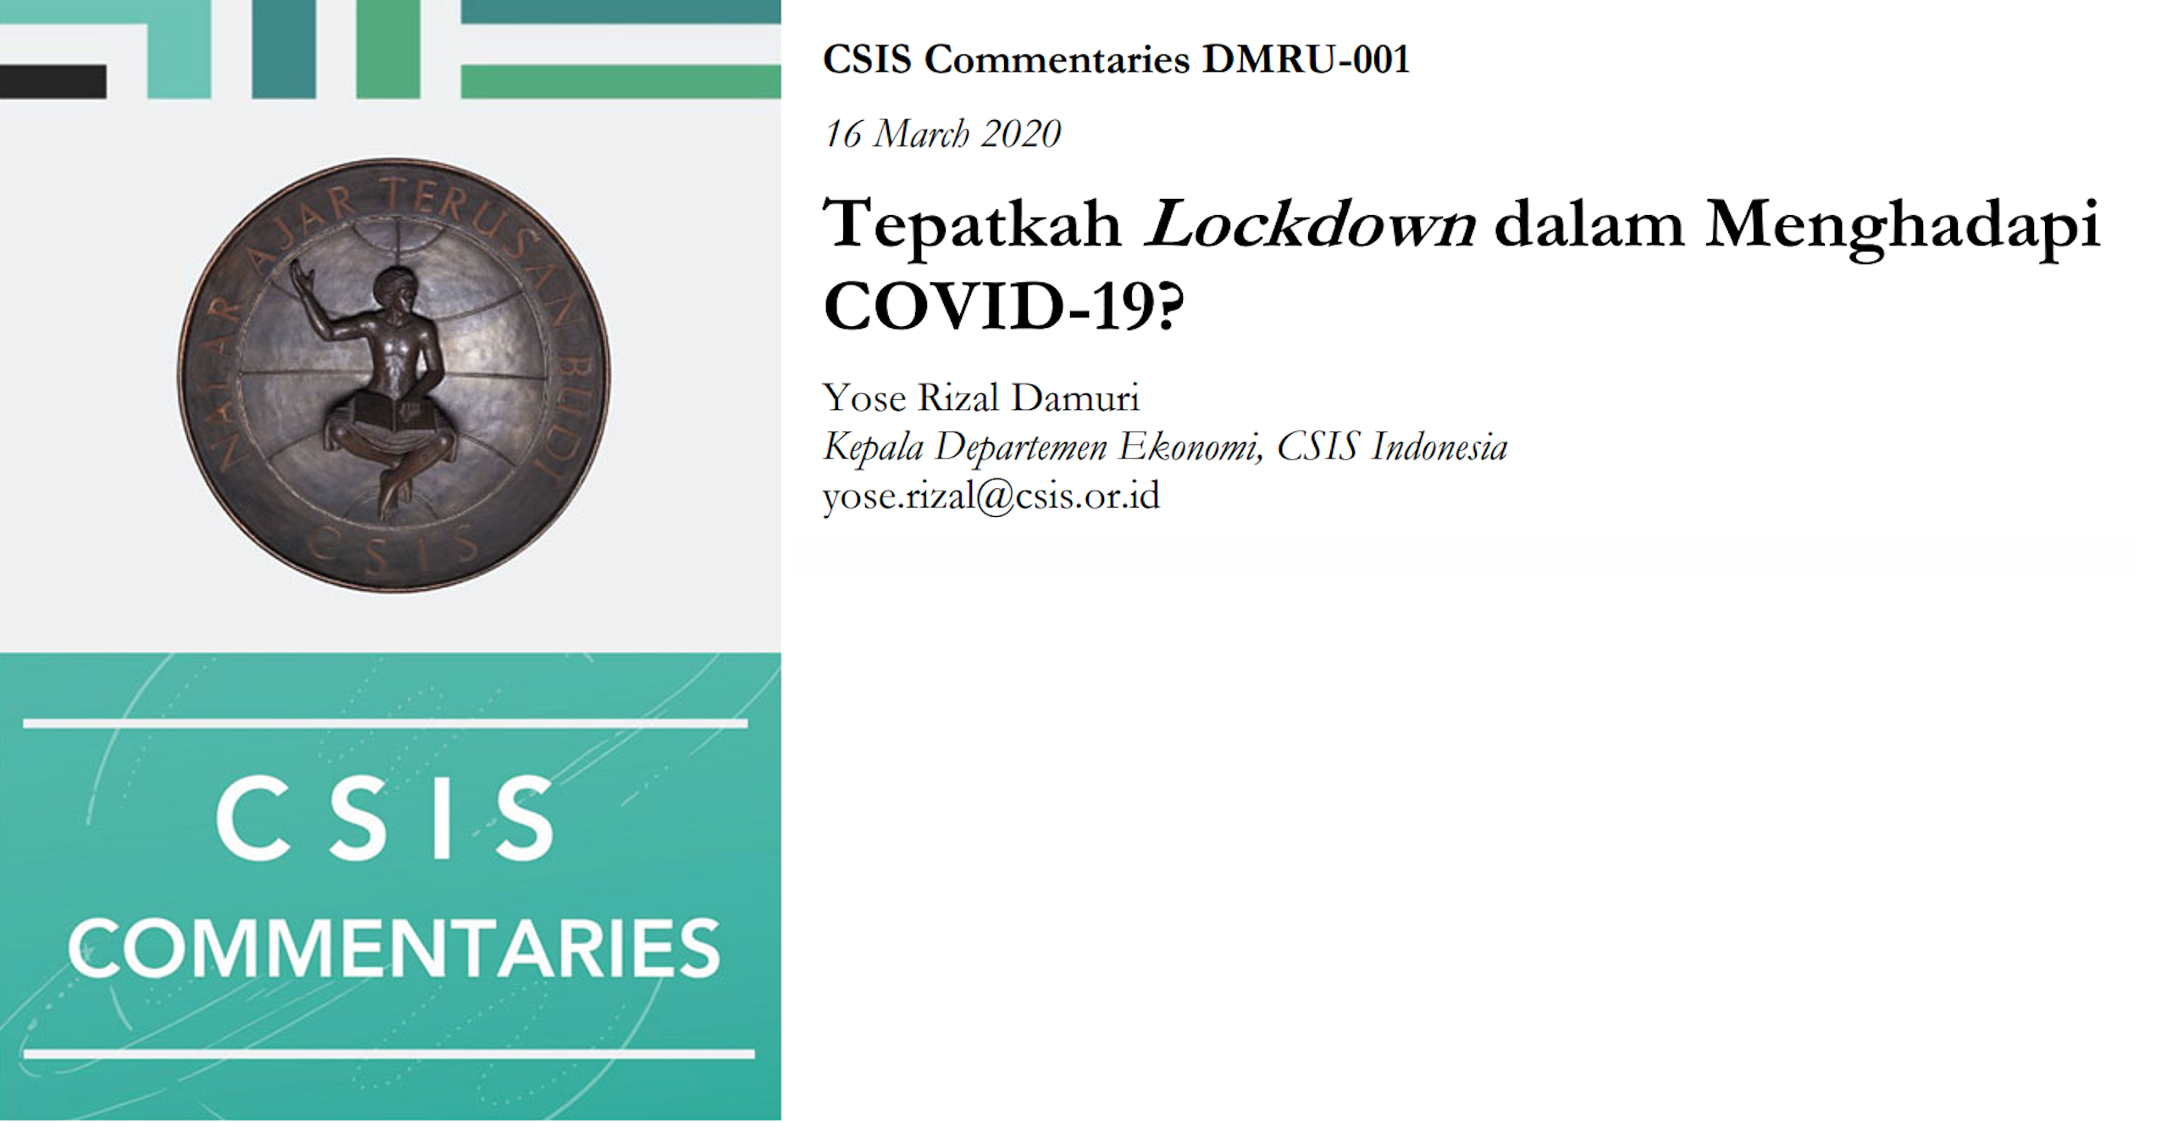 Tepatkah Lockdown dalam menghadapi COVID-19?